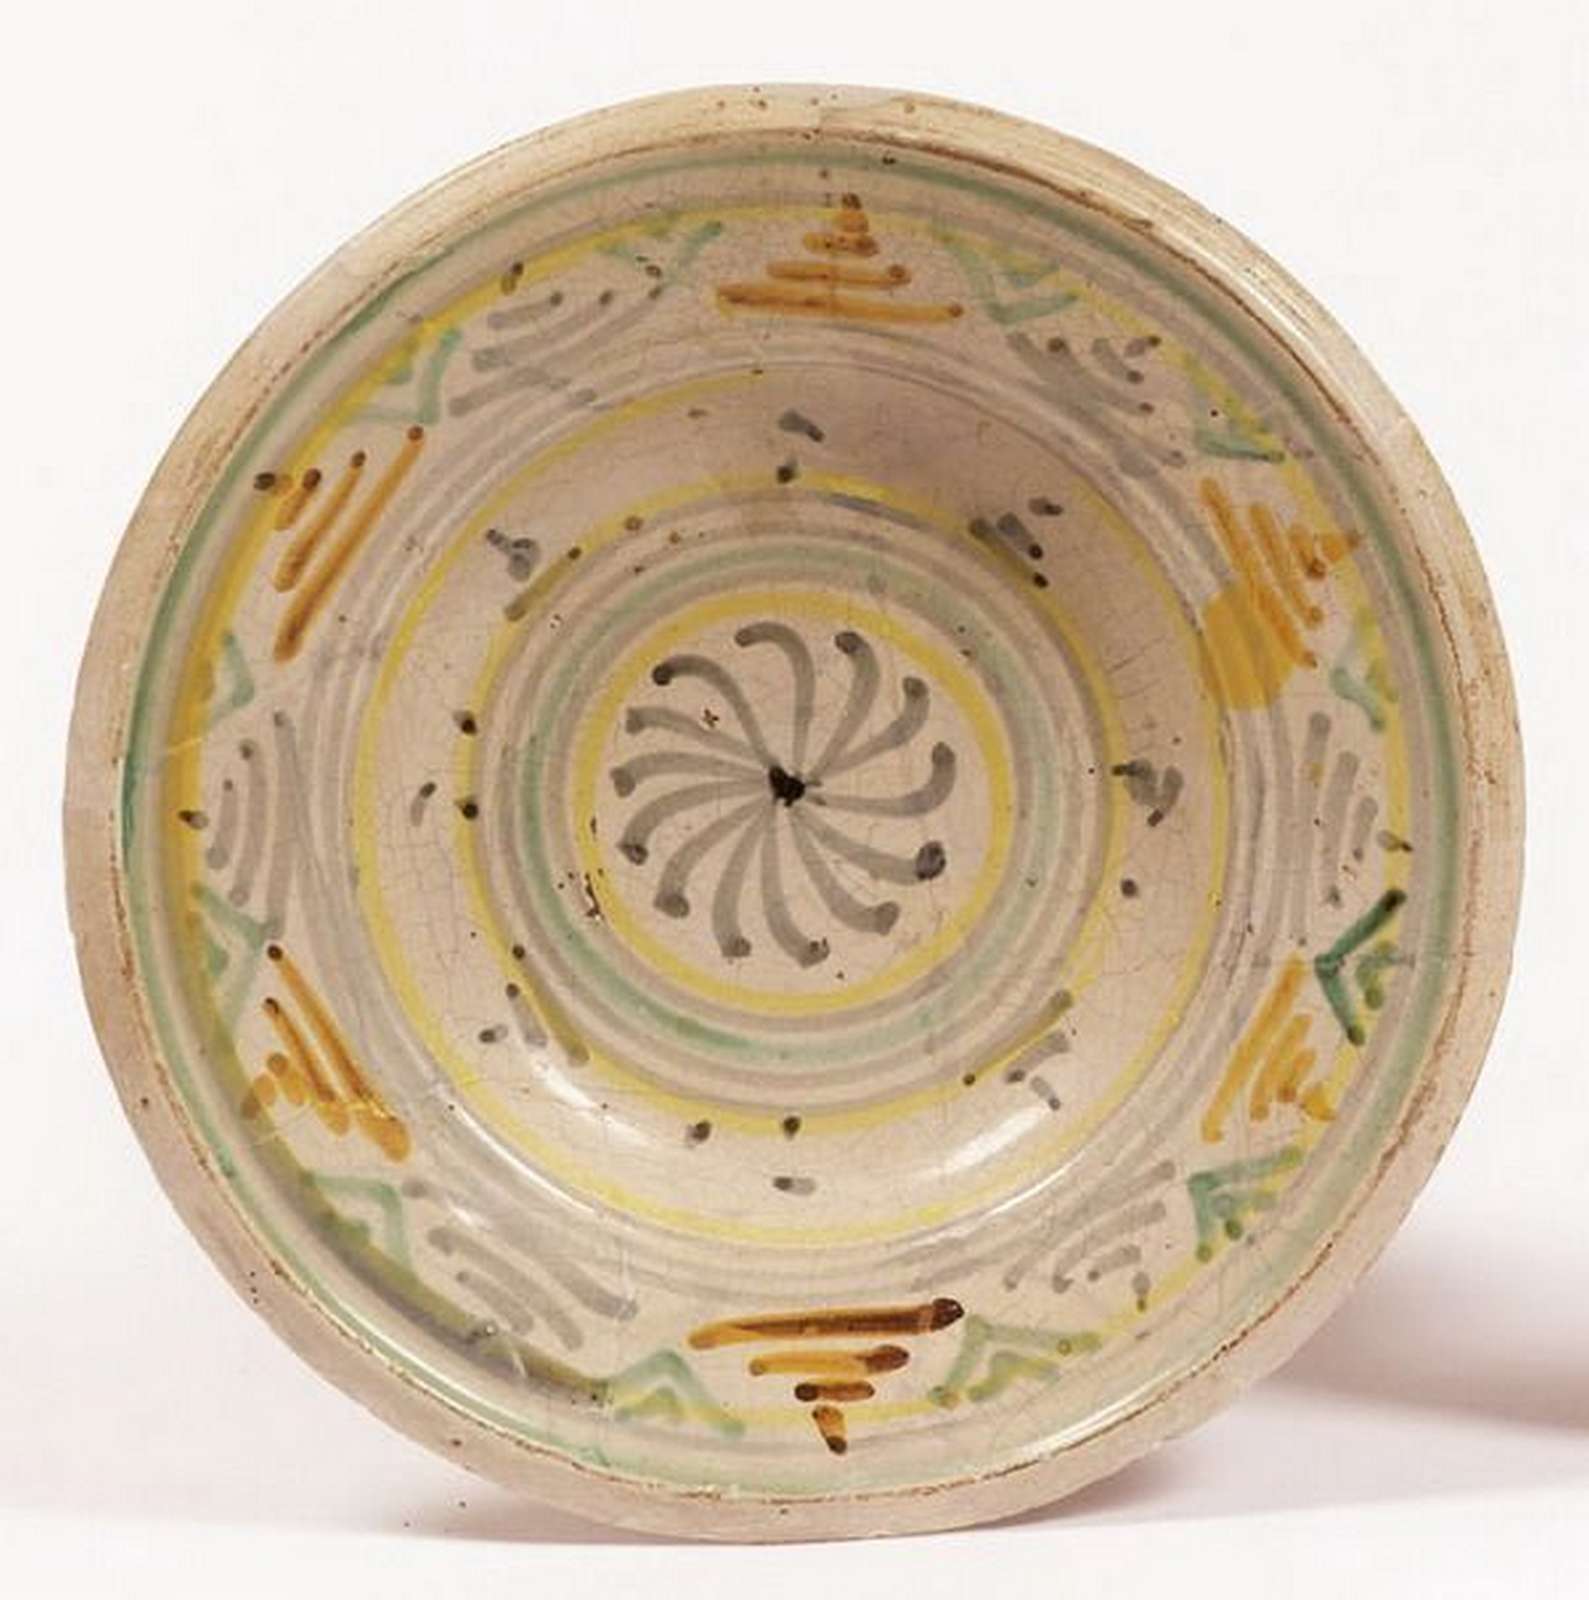 Antico piatto in maiolica. Epoca XVII secolo. - Ceramiche - Oggettistica - Prodotti - Antichità Fiorillo